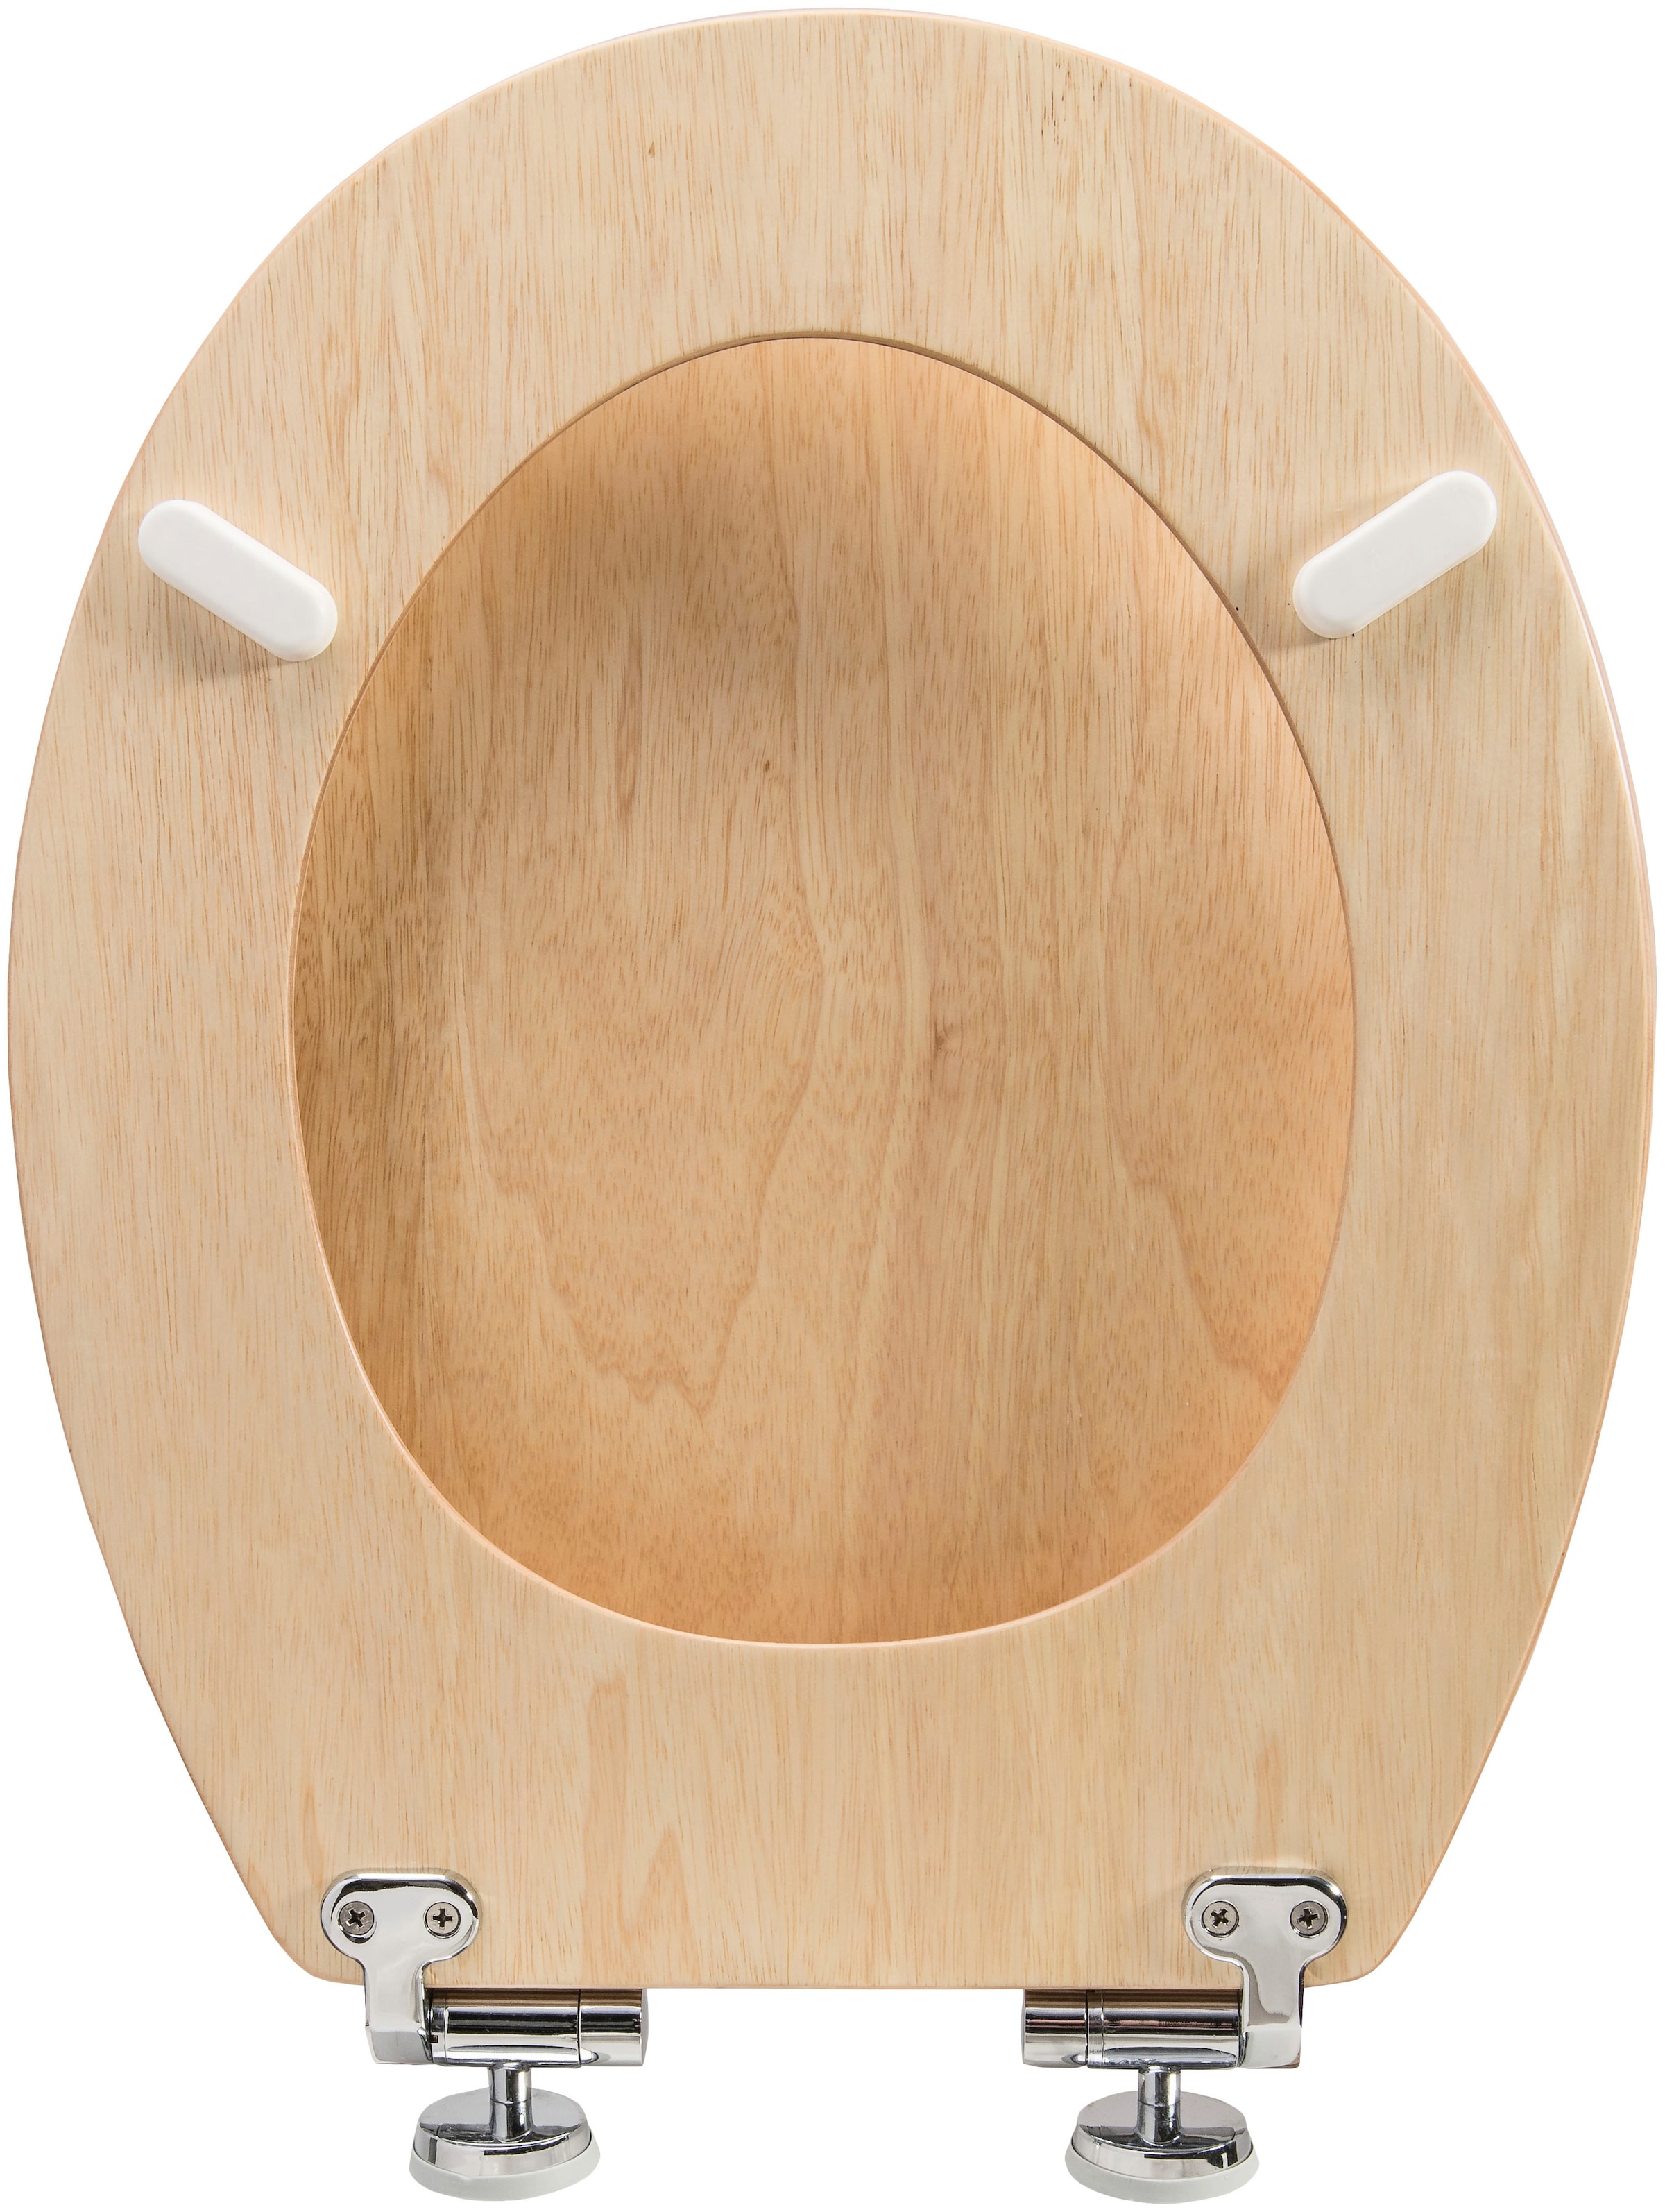 CORNAT WC-Sitz »Hochwertiges Echtholz - Kiefer - Absenkautomatik«, Komfortables Sitzgefühl - Edle Holz-Optik passt in jedes Badezimmer